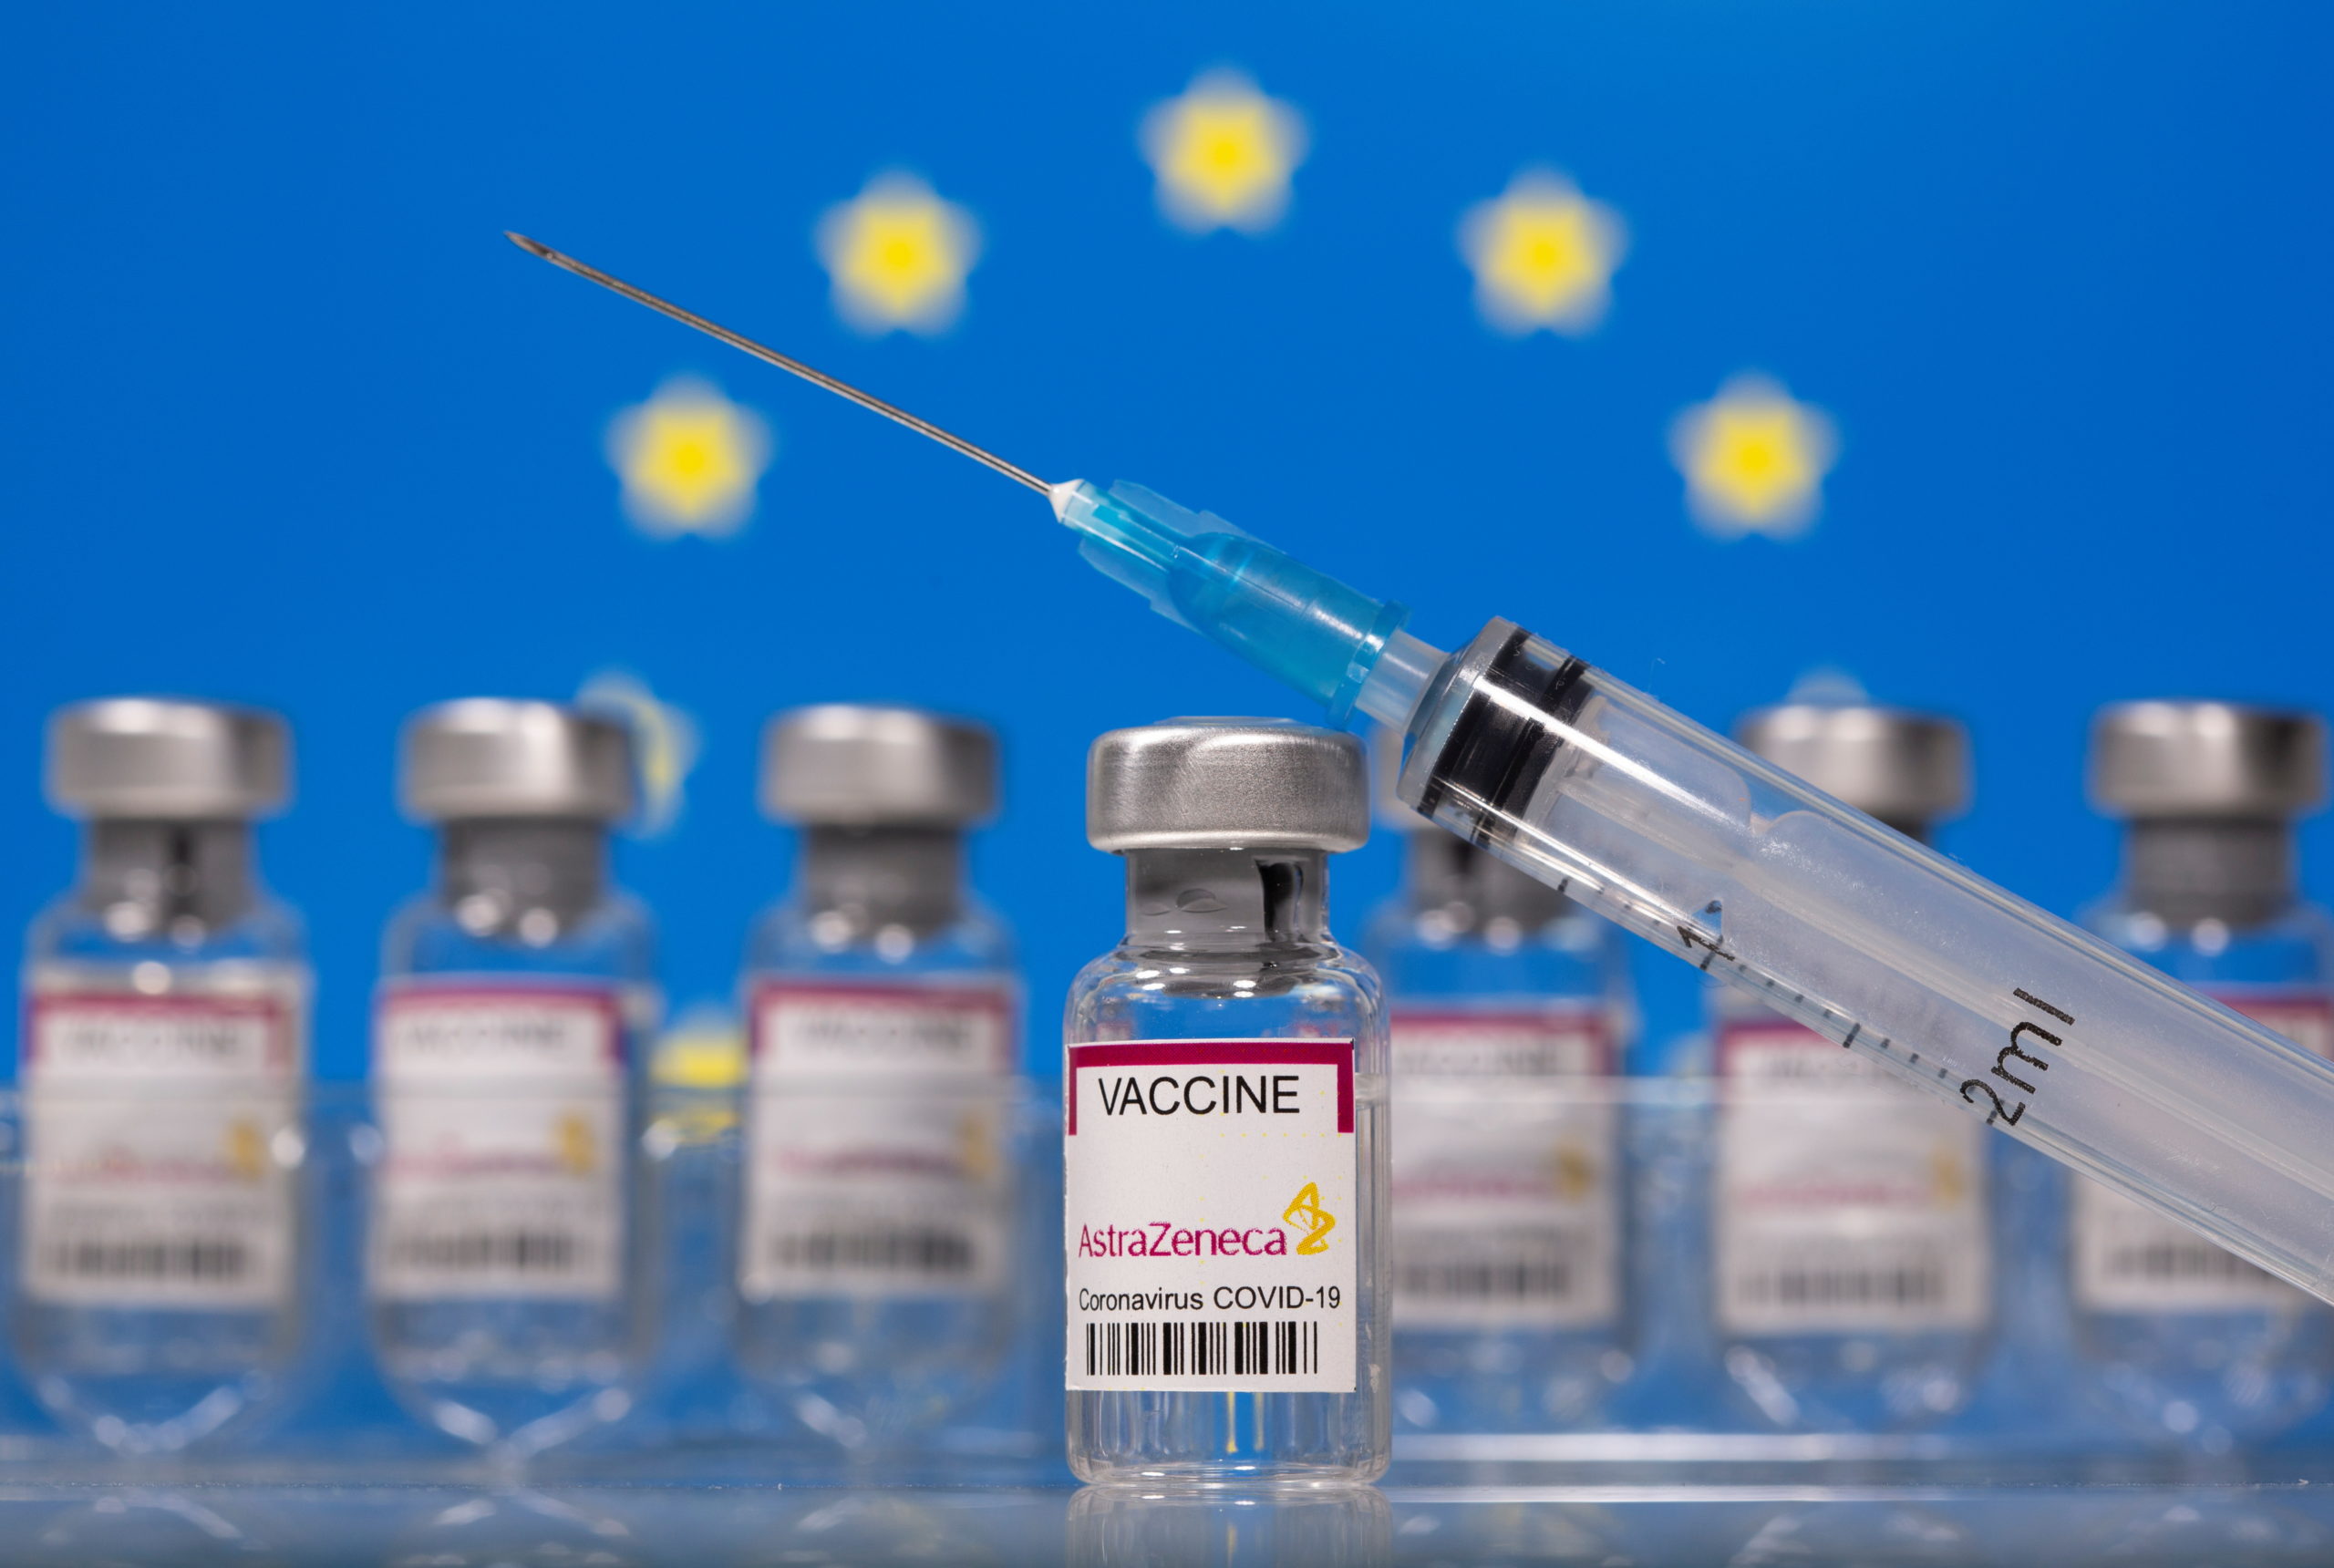 Exclusif: L'UE ne doit pas s'attendre à recevoir des vaccins AstraZeneca produits aux USA